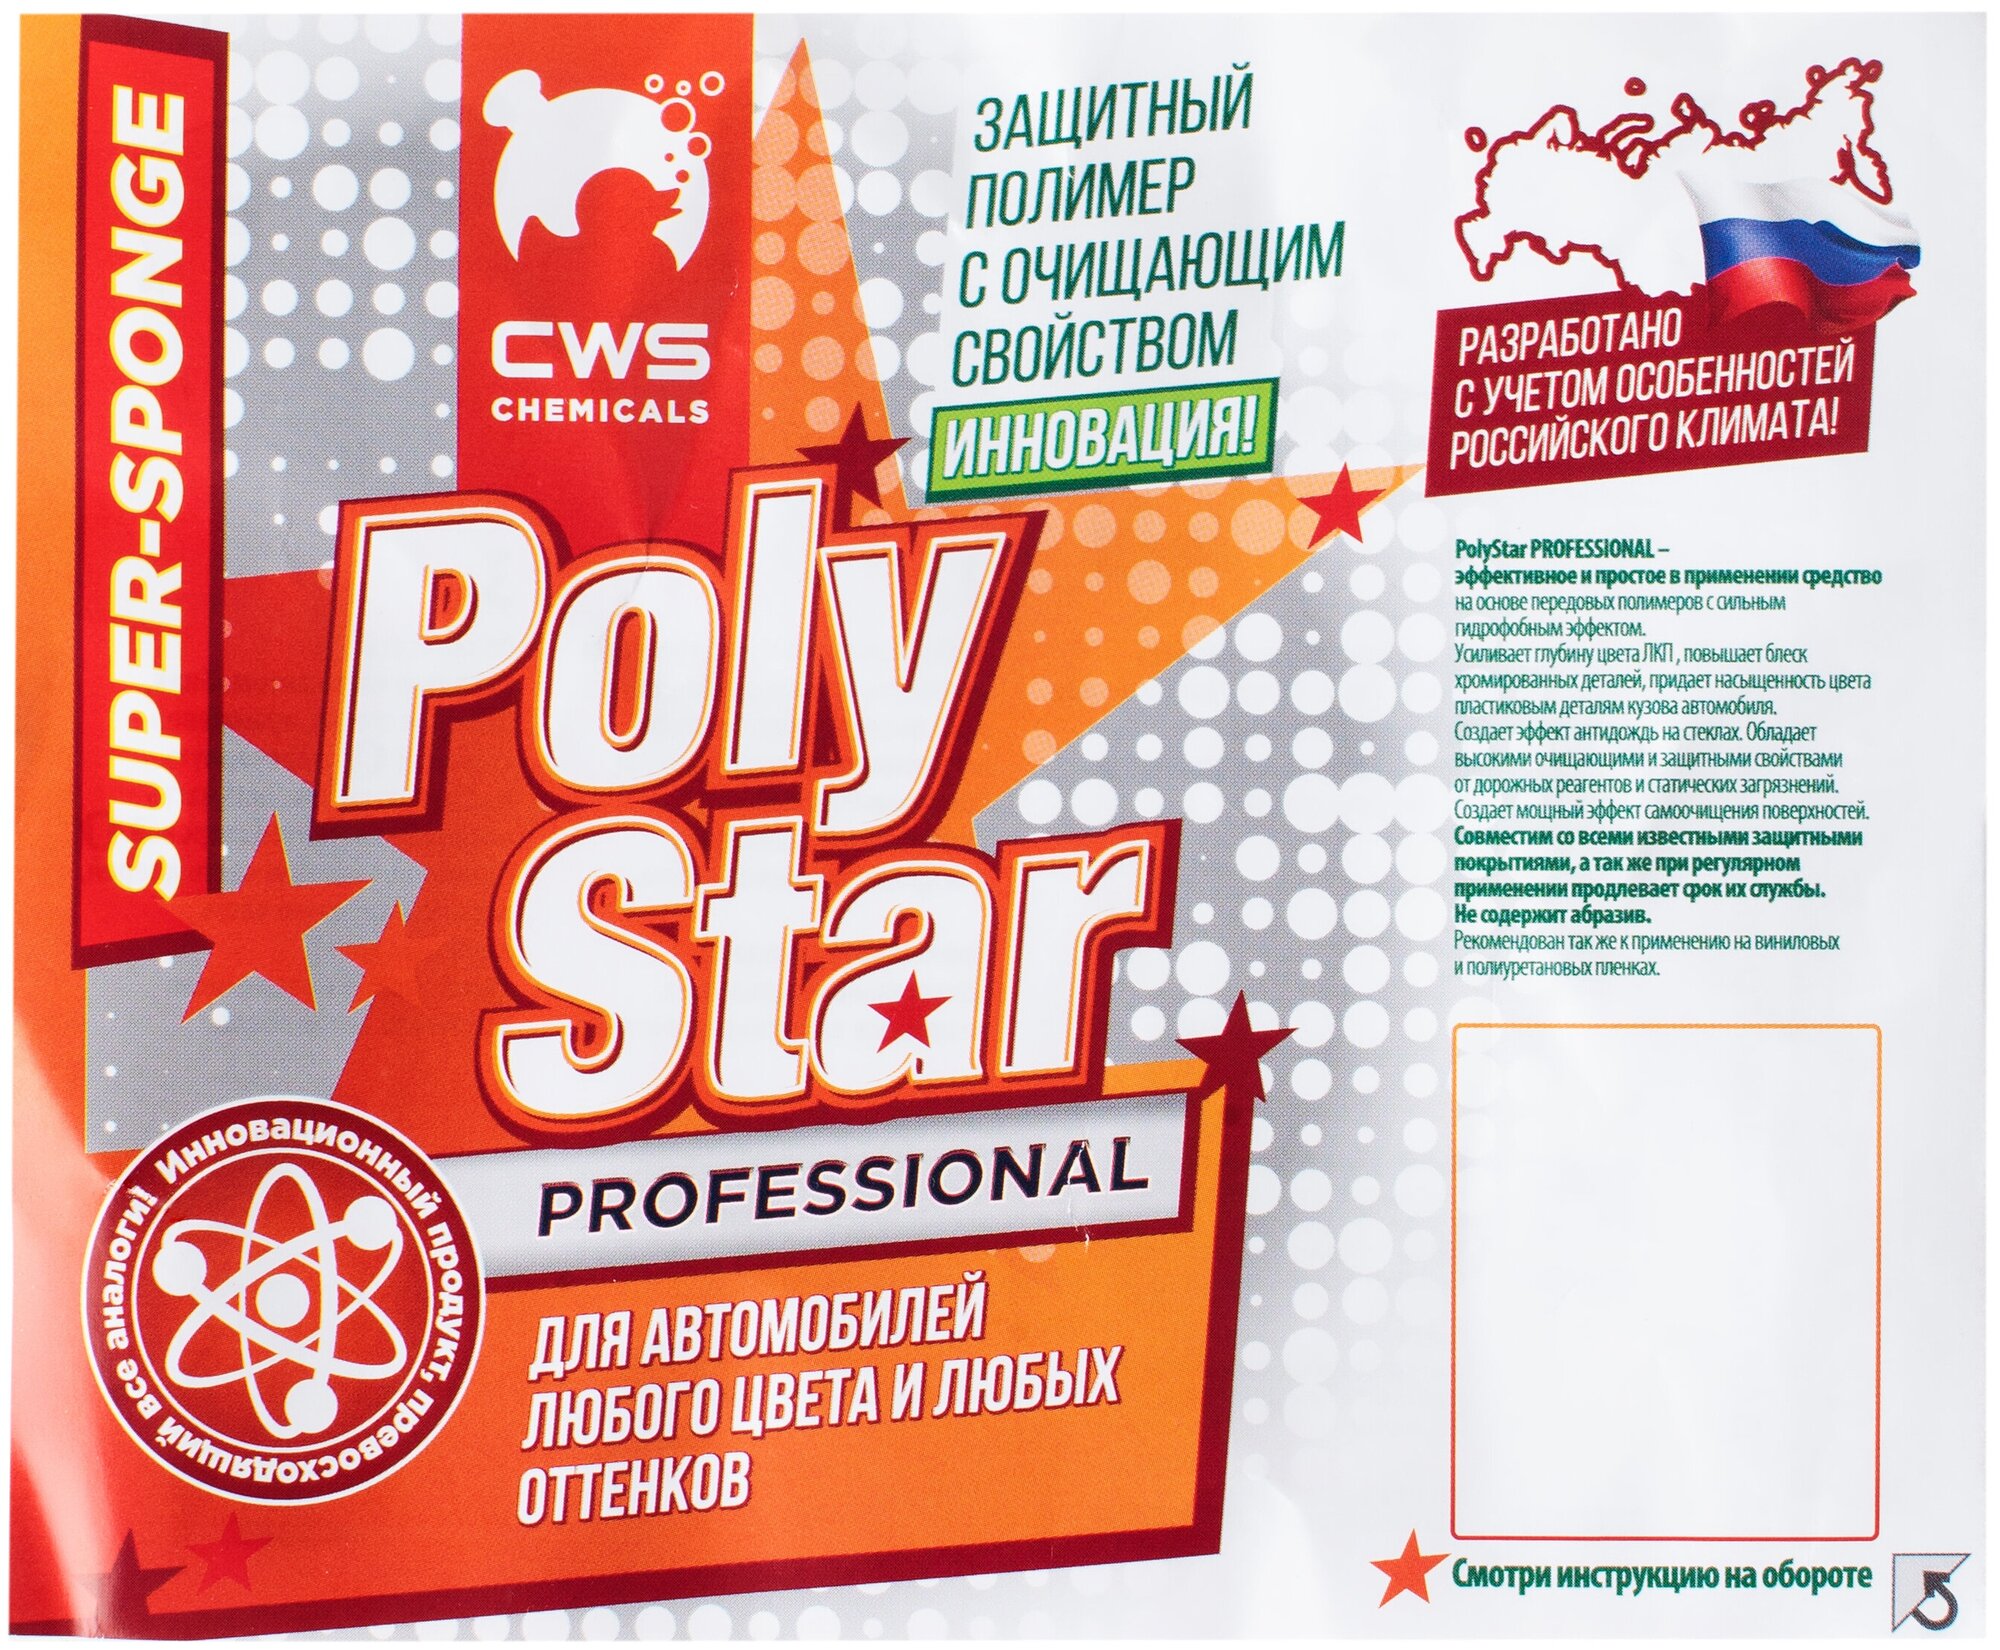 Super Sponge Poly Star CWS Chemicals Автомобильная губка с защитным полимером